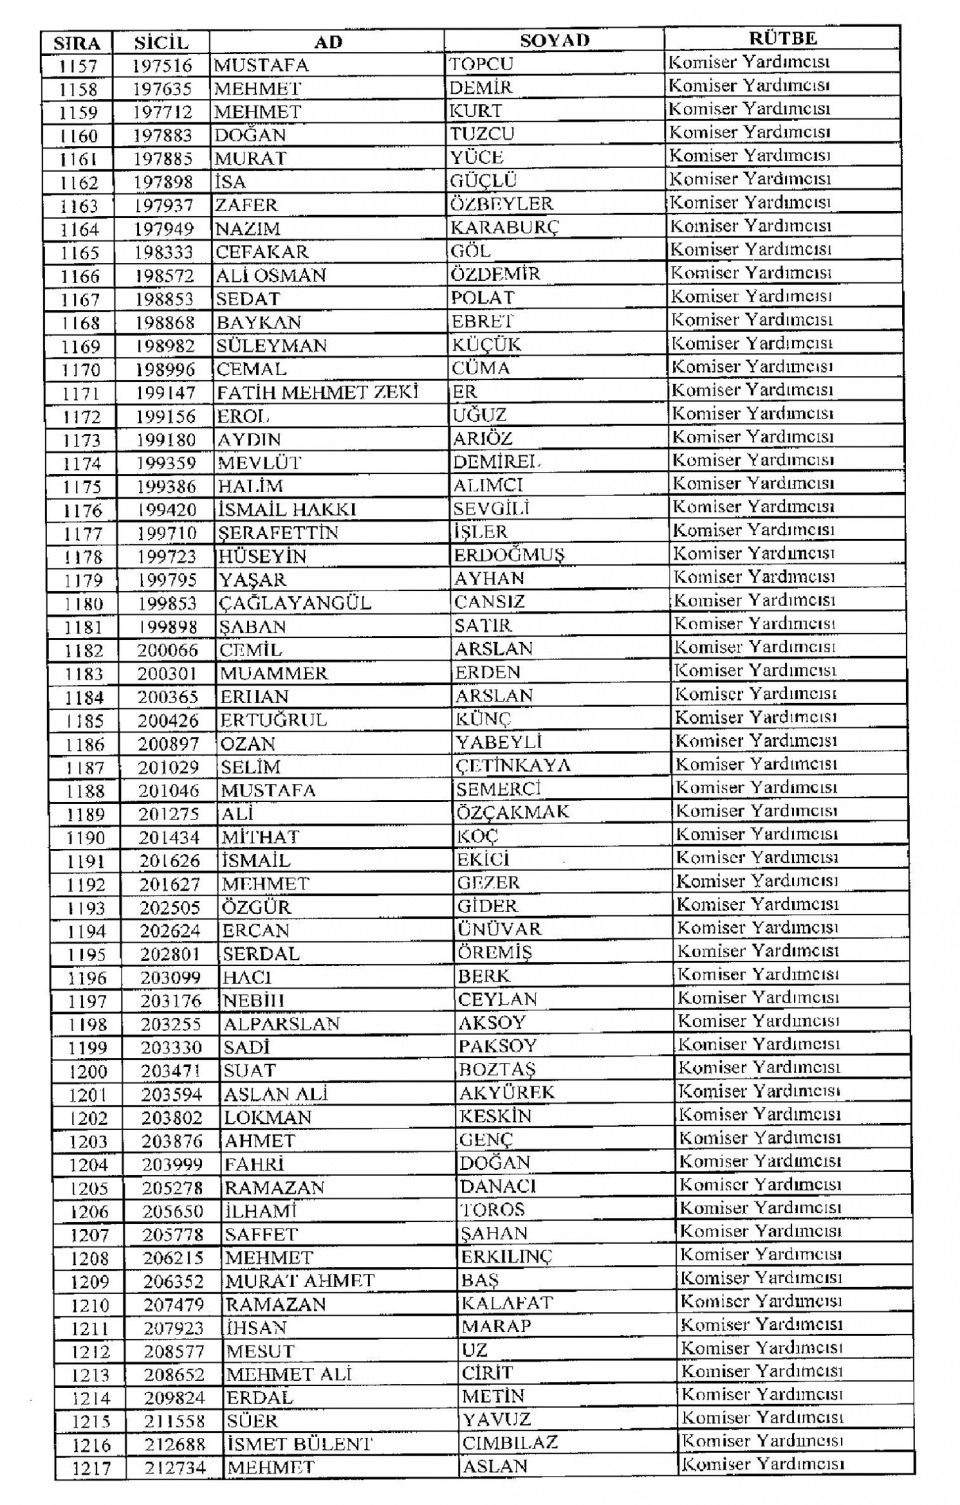 Kamudan ihraç edilenlerin isim isim listesi 78